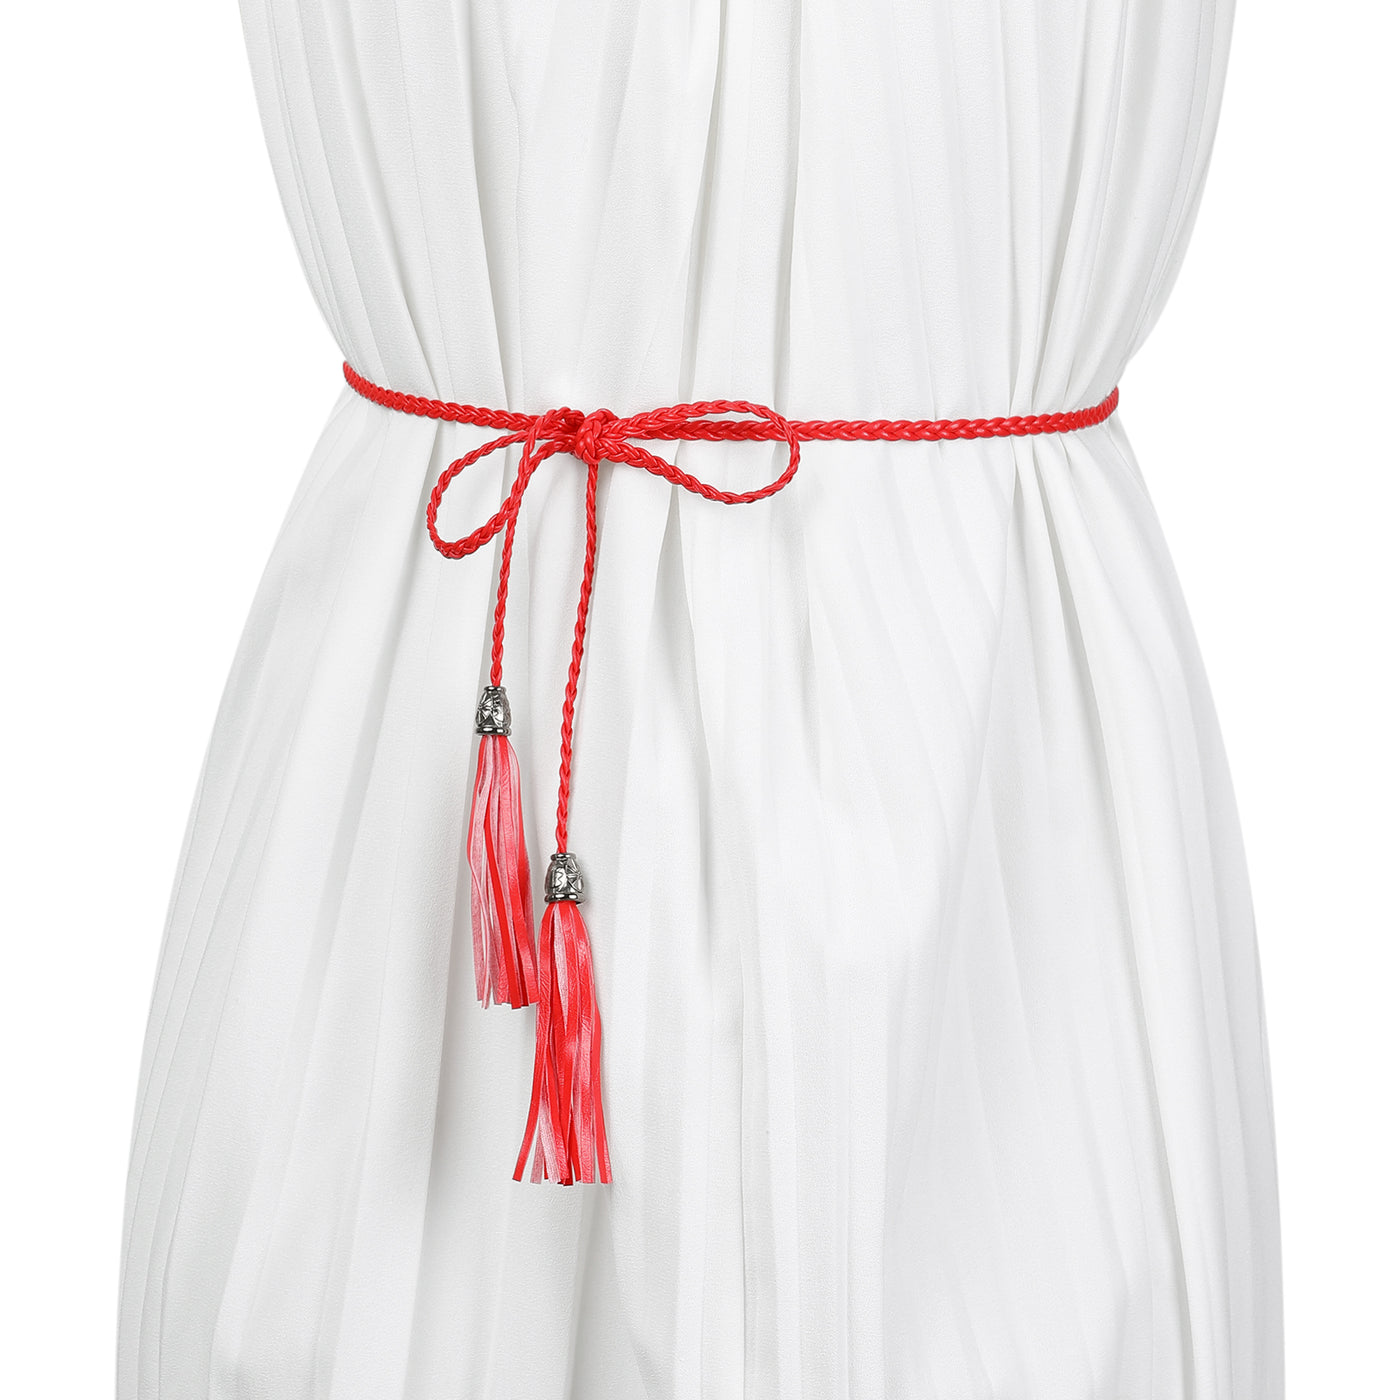 Allegra K Tassel Braided Skinny Woven Waist Belts for Skirt Dress